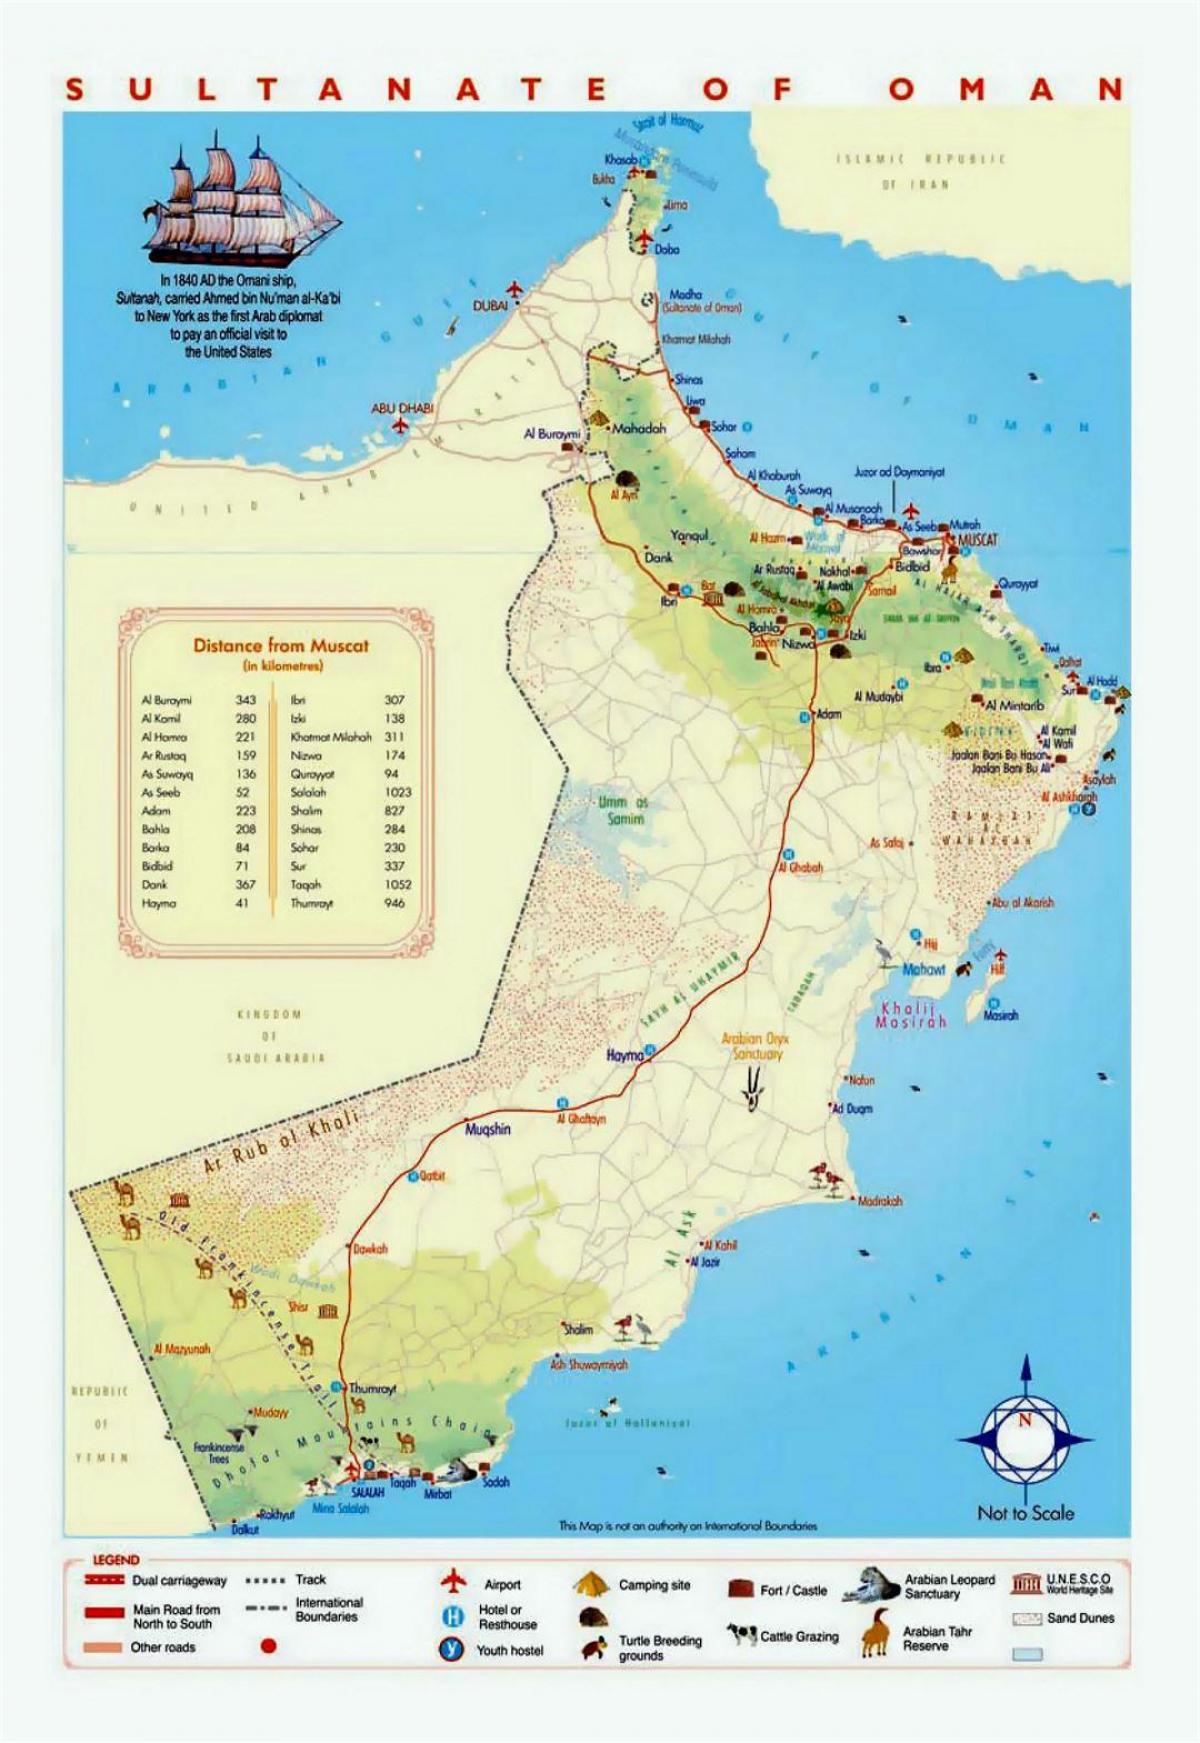 Oman turismo lekuak mapa